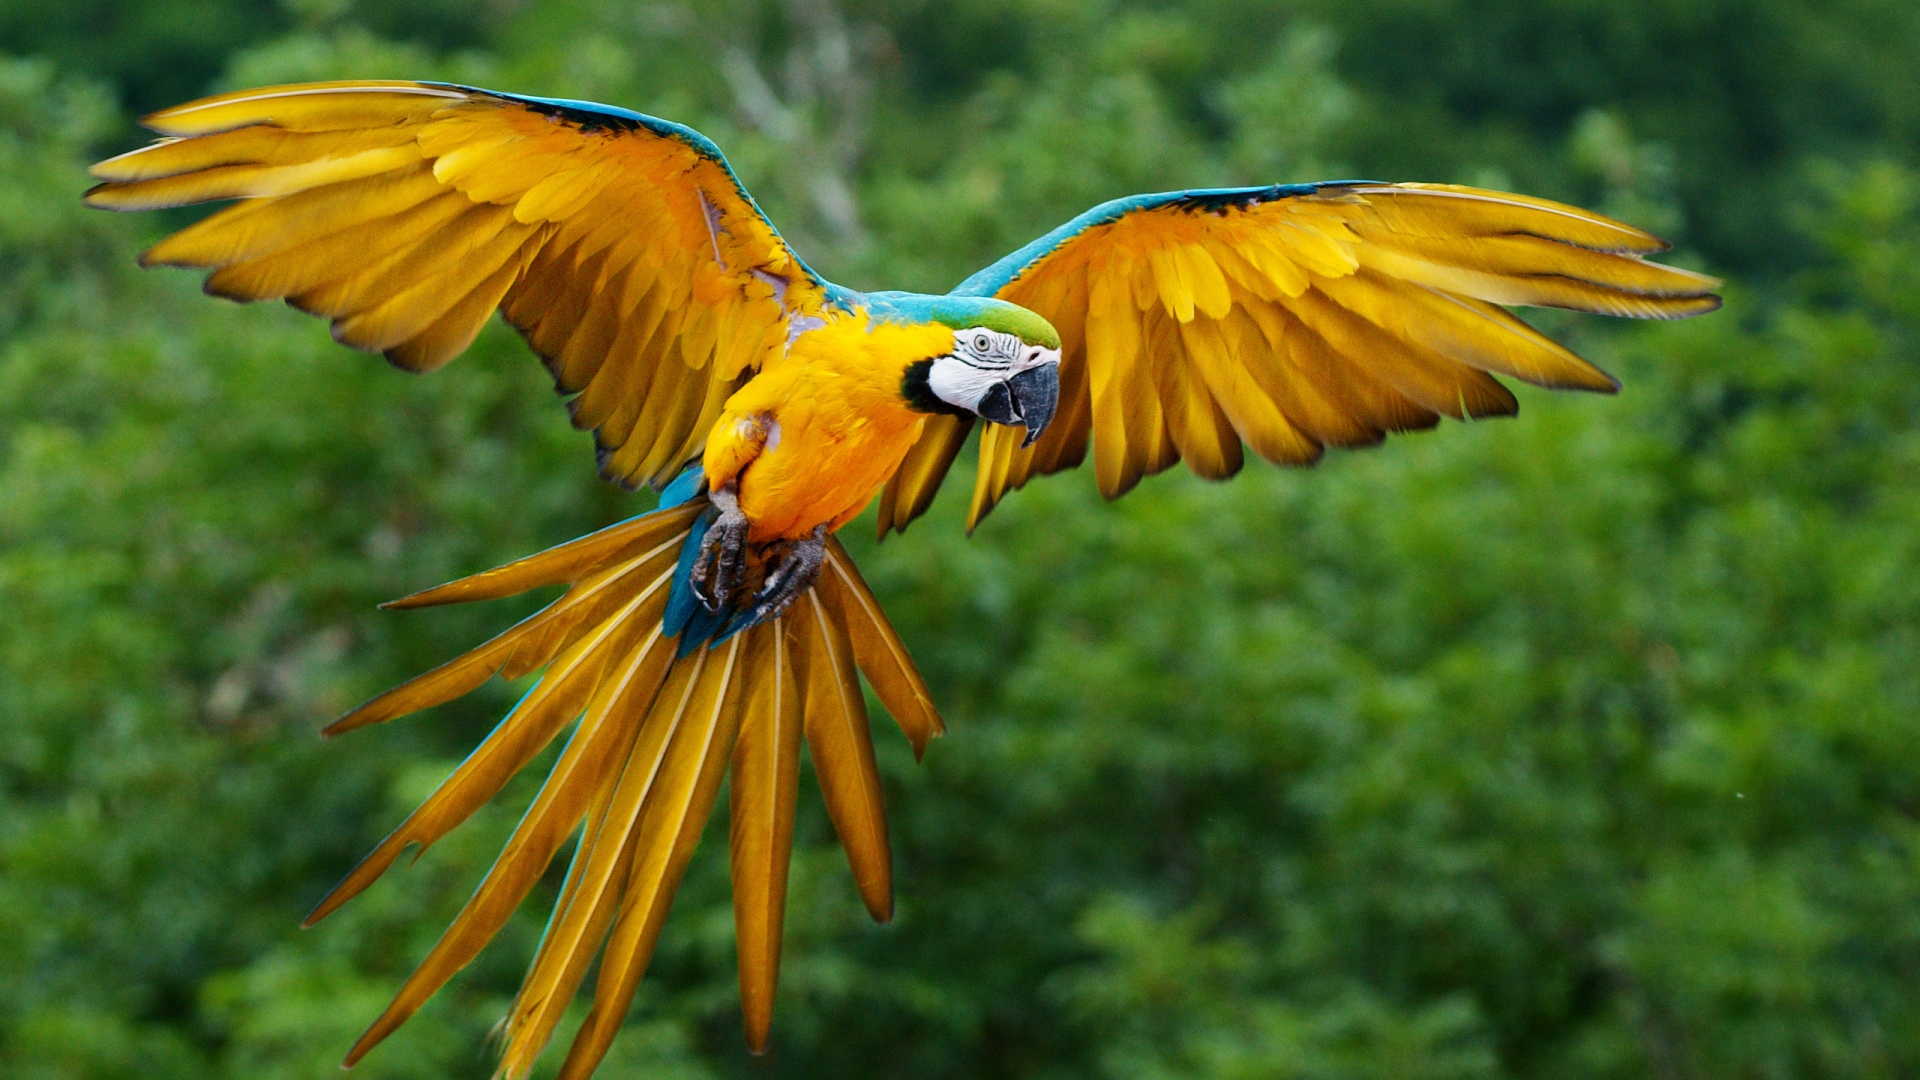 Parrot Flying for 1920 x 1080 HDTV 1080p resolution